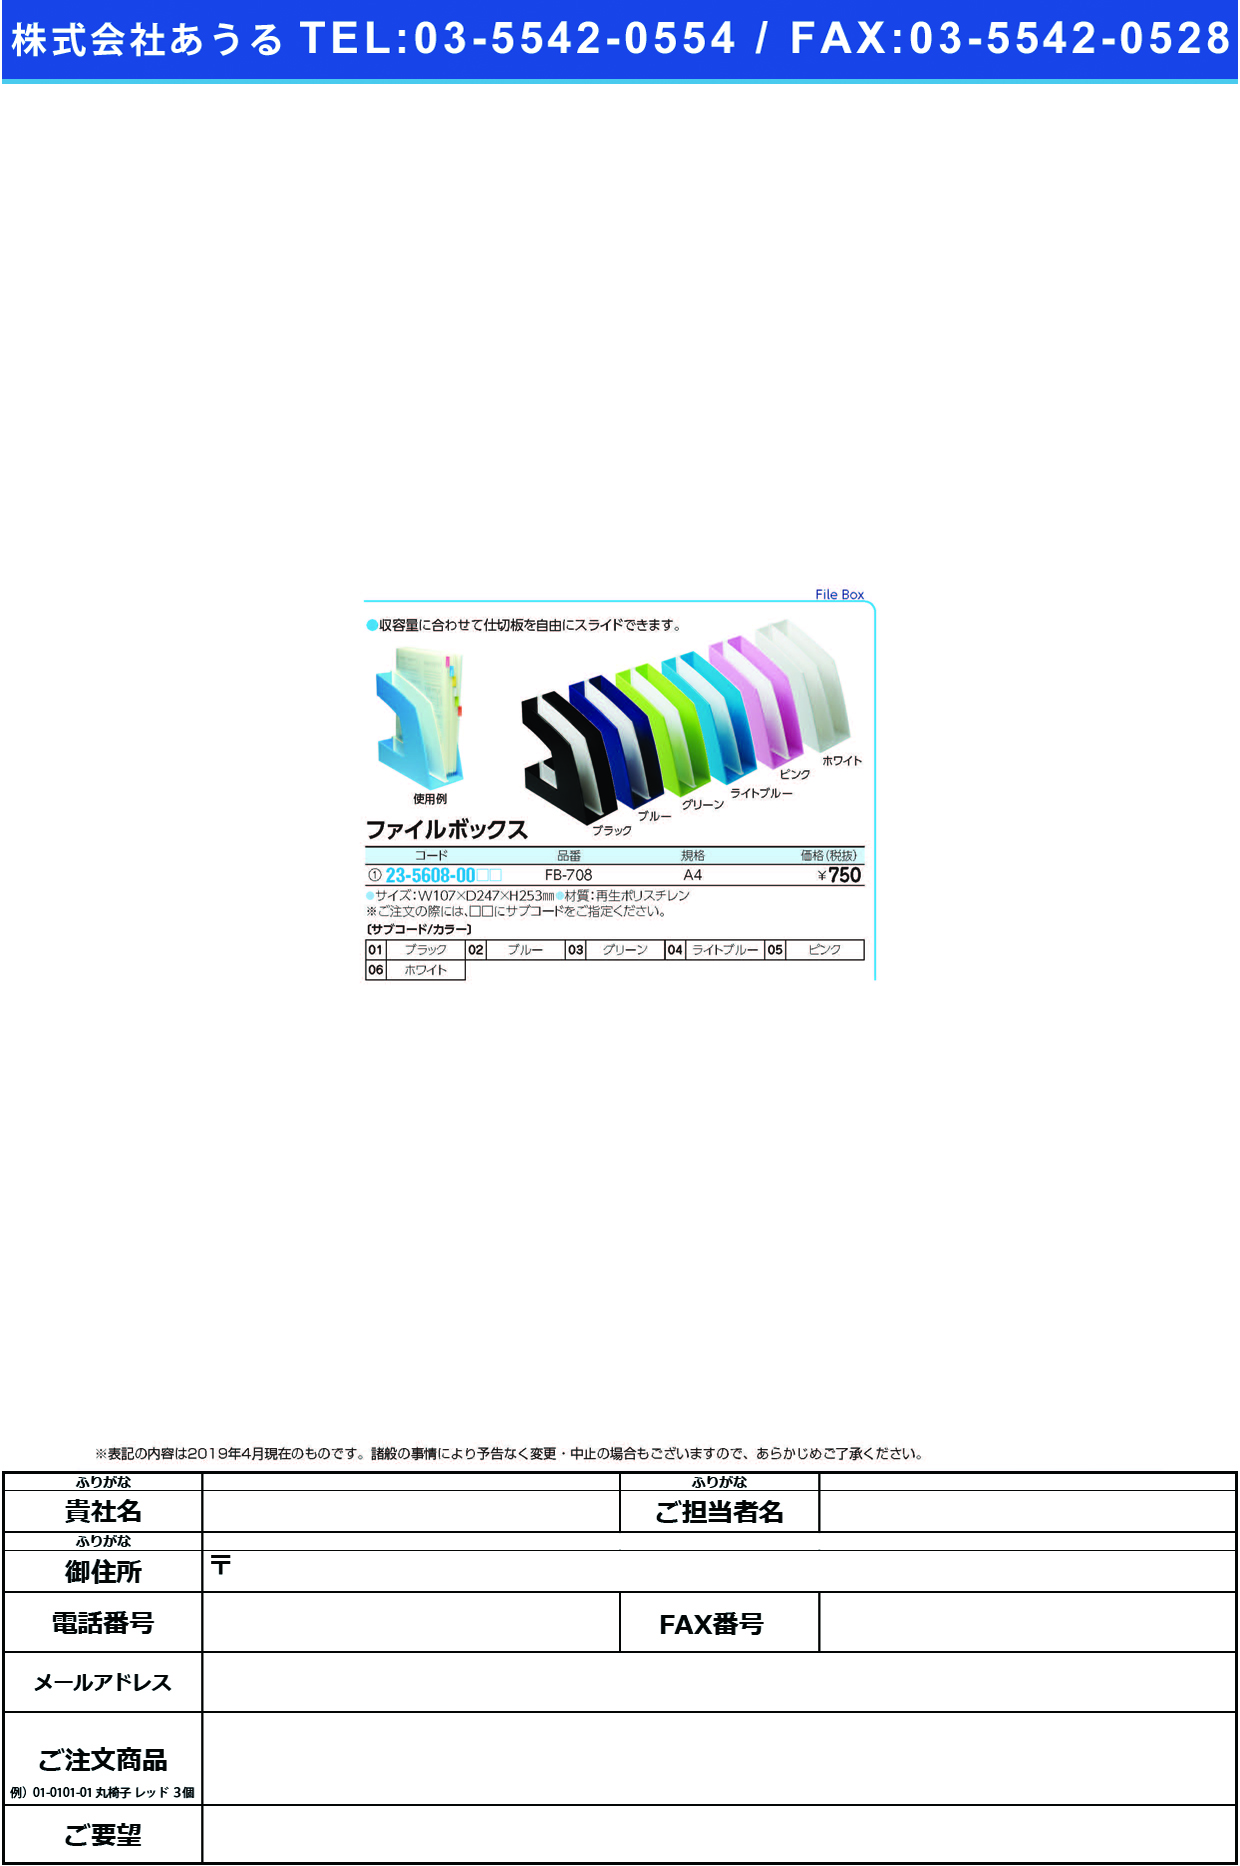 (23-5608-00)ファイルボックス FB-708(A4) ﾌｧｲﾙﾎﾞｯｸｽ ピンク【1個単位】【2019年カタログ商品】